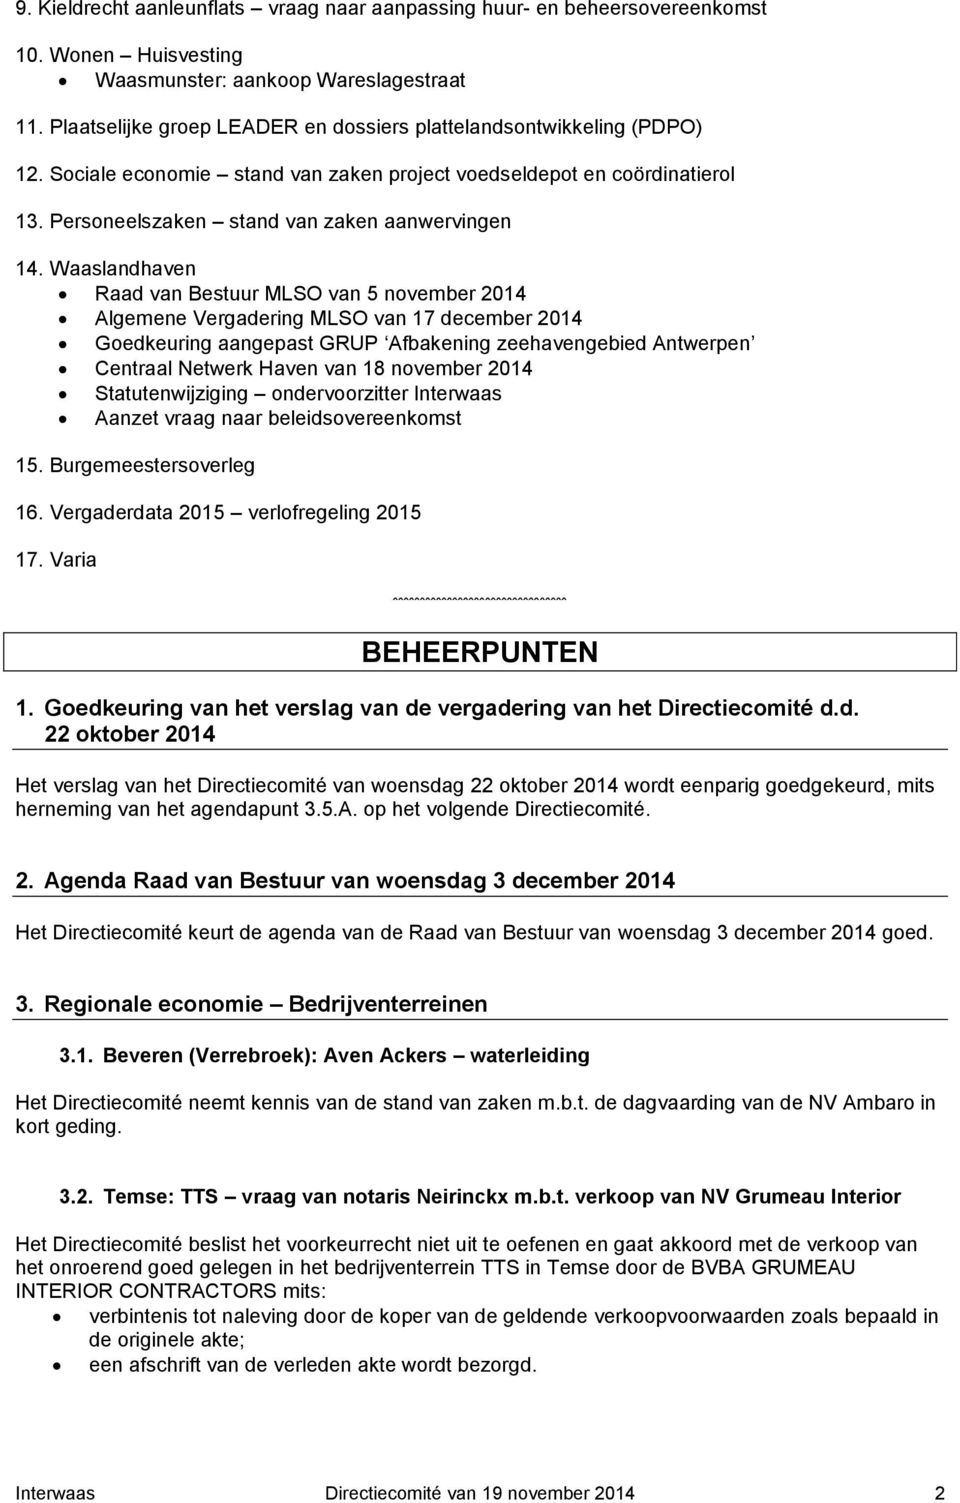 Waaslandhaven Raad van Bestuur MLSO van 5 november 2014 Algemene Vergadering MLSO van 17 december 2014 Goedkeuring aangepast GRUP Afbakening zeehavengebied Antwerpen Centraal Netwerk Haven van 18